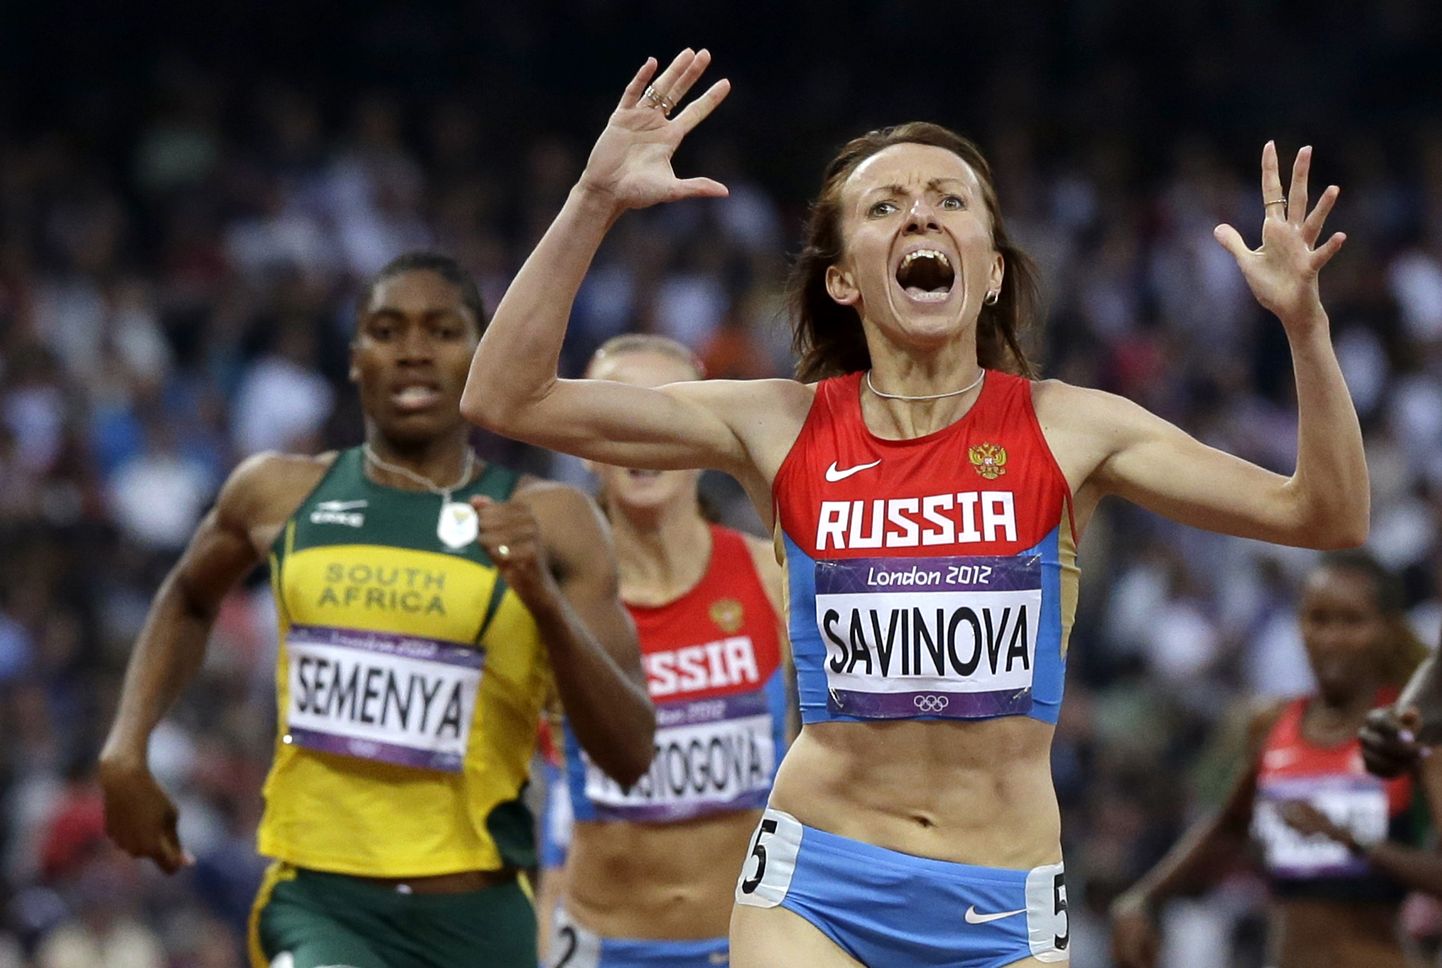 Venemaa jooksja Maria Savinova ületas Londoni olümpial 800 meetri jooksus finišijoone esimesena, kuid pidi kuldmedalist siiski suu puhtaks püsima - doping.